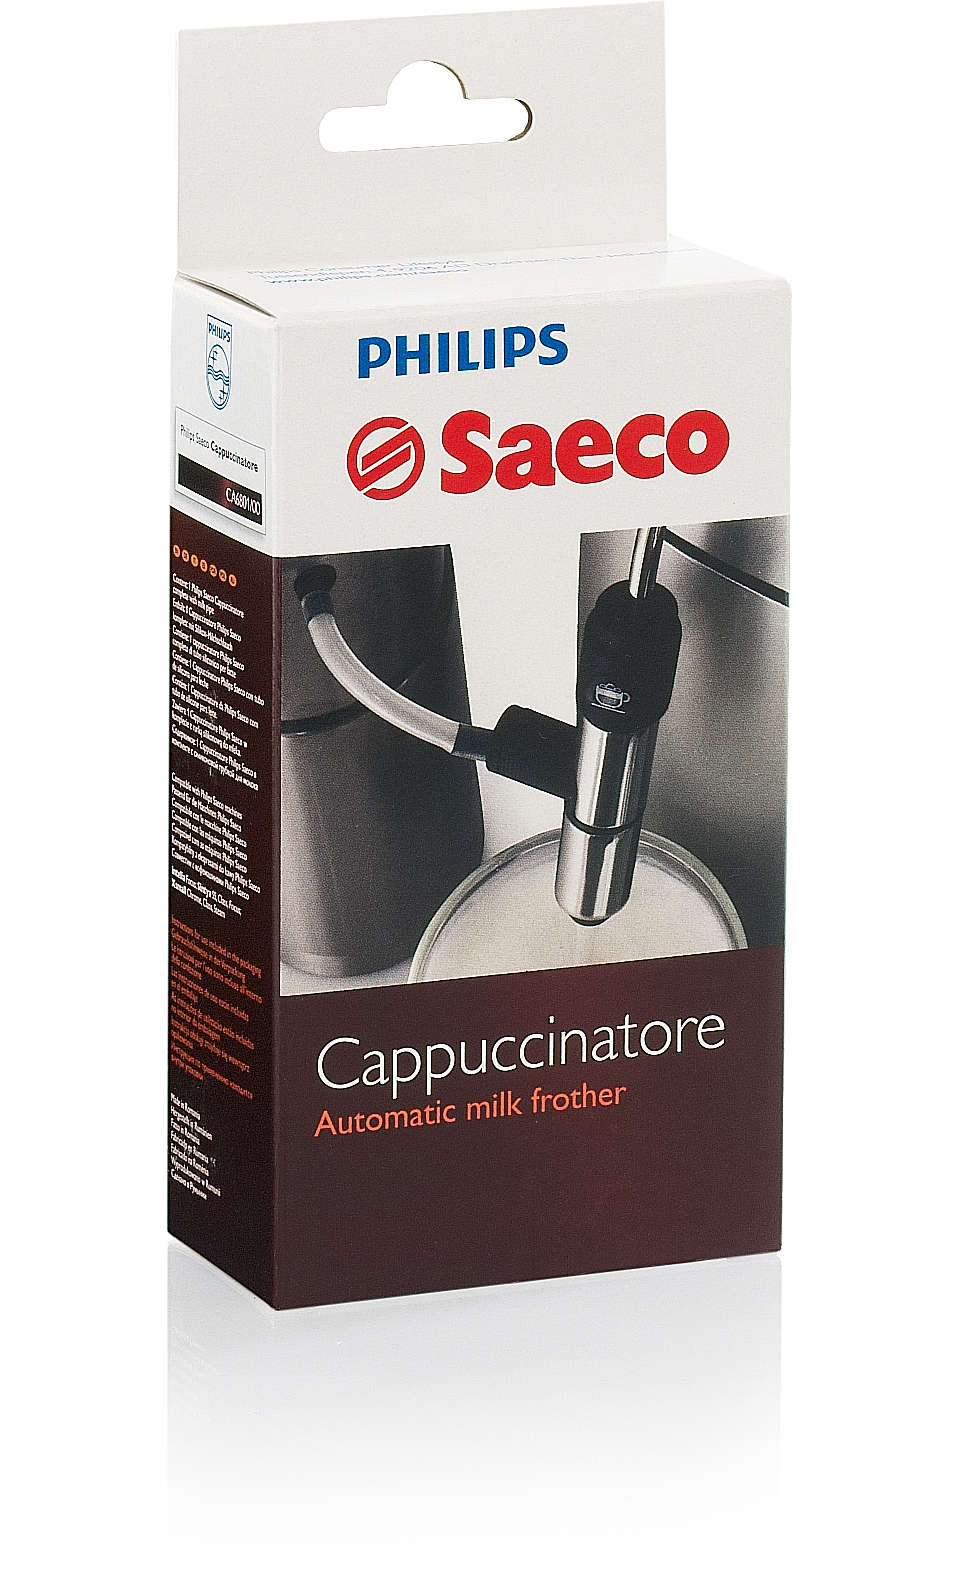 Un authentique cappuccinatore italien pour votre Saeco